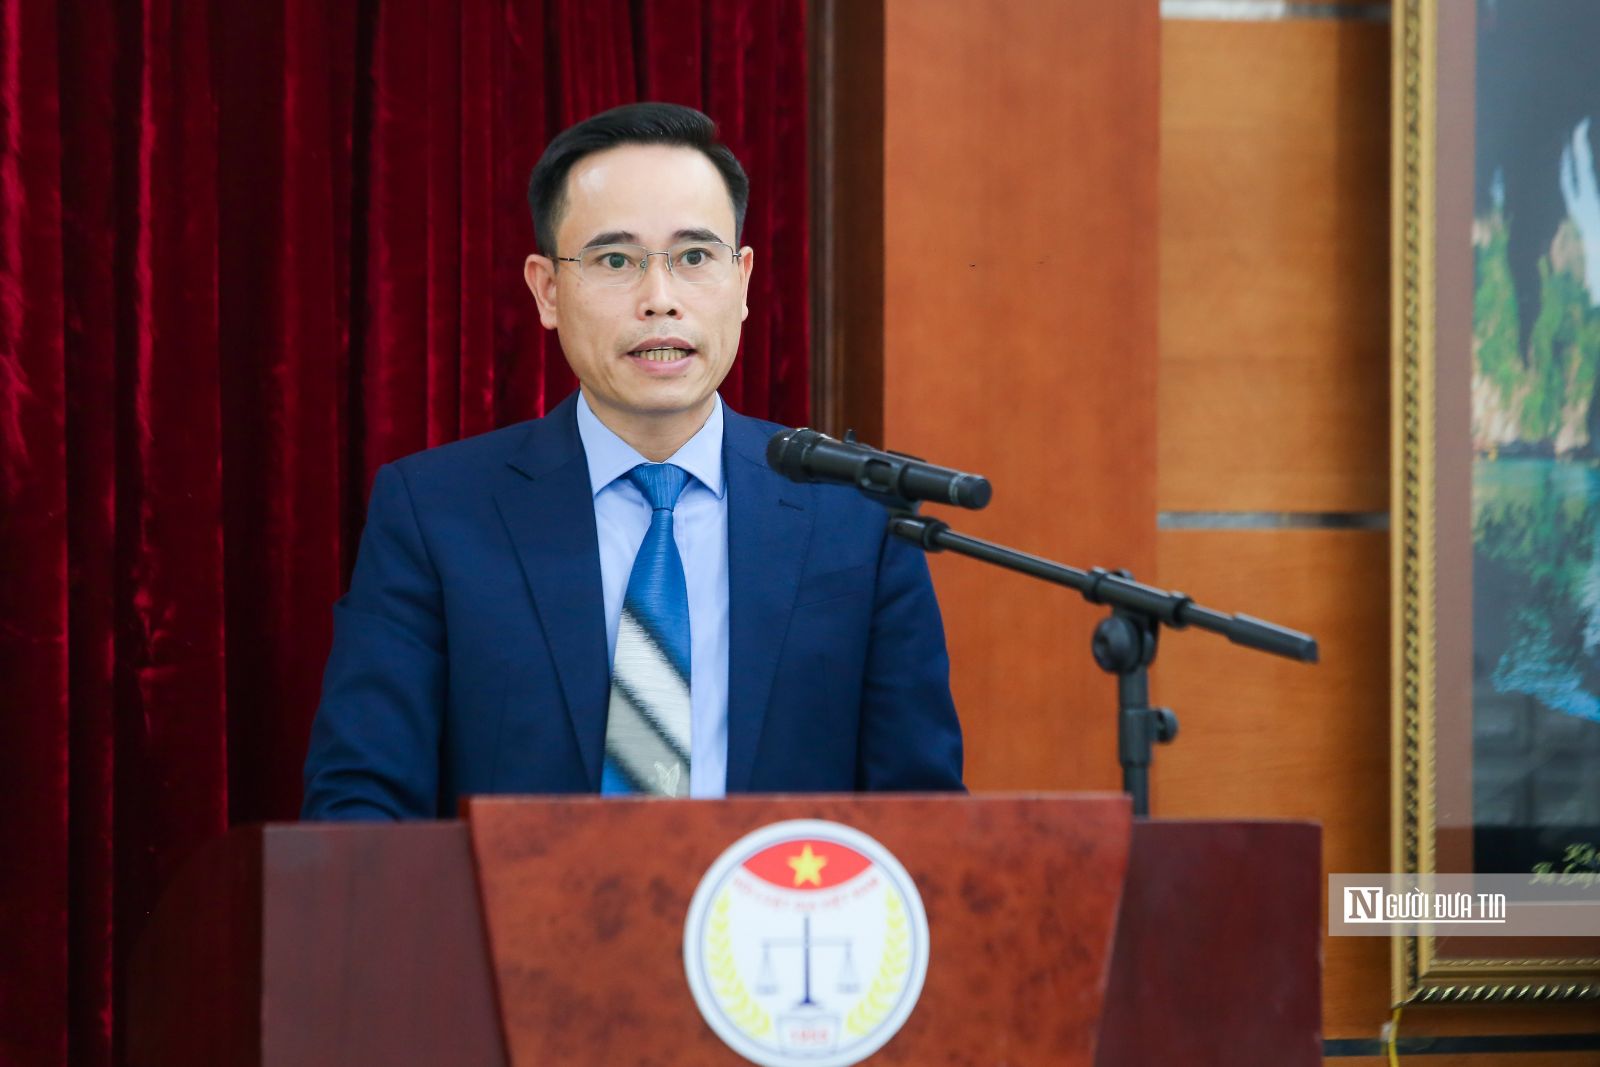 Tổng kết năm 2021, Hội Luật gia Việt Nam ghi nhận nhiều kết quả nổi bật